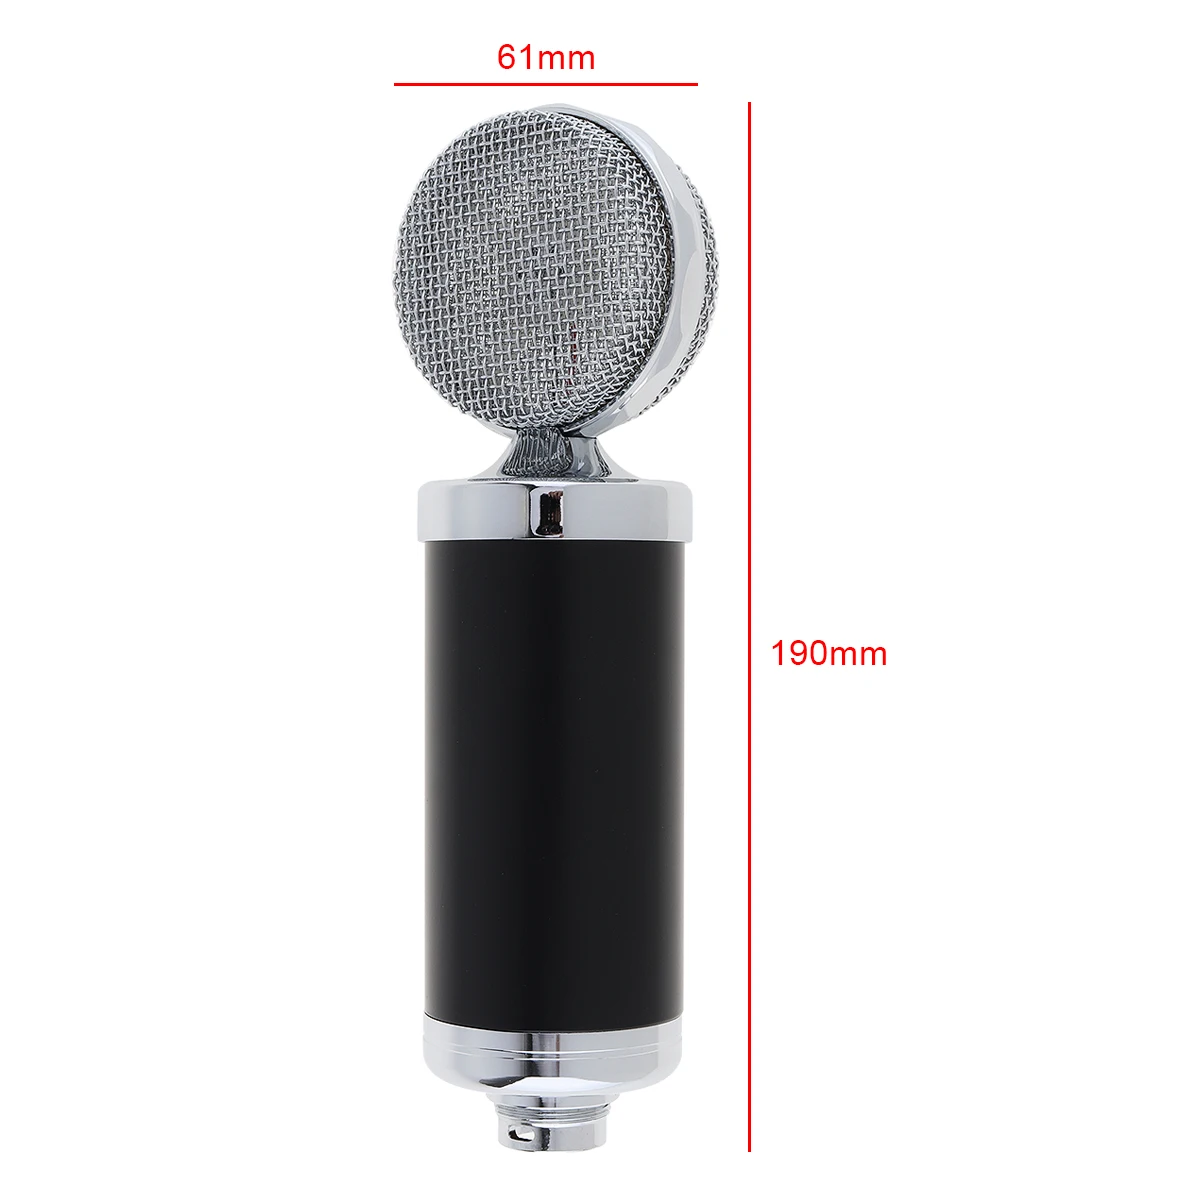 Профессиональный Специальный конденсаторный микрофон BM 5000 с управлением цепи и позолоченной большой головкой диафрагмы для студии/KTV